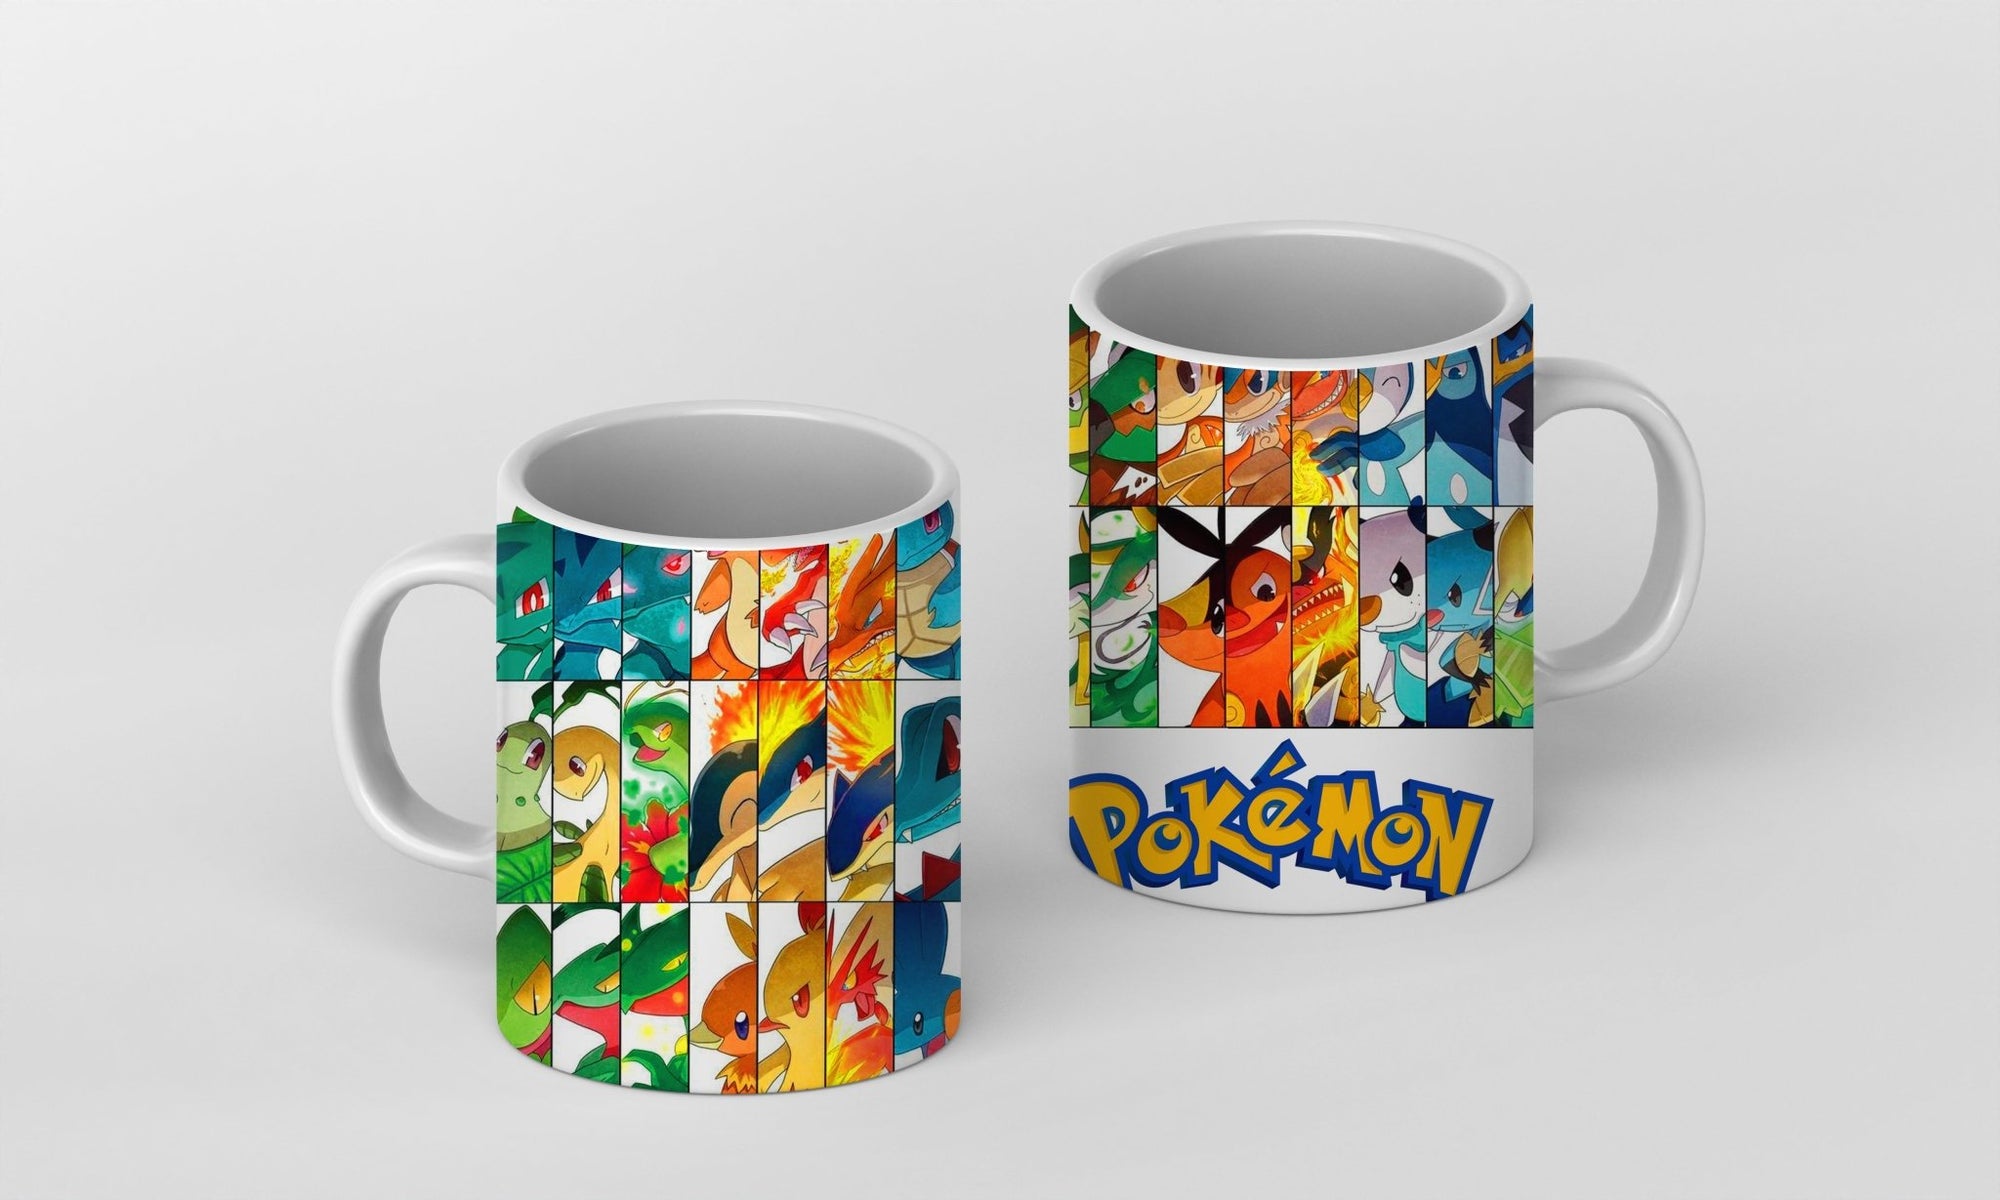 Legendäre Pokémon Ho-Oh und Lugia Tasse - 2 Varianten zur Auswahl Kaffee- und Teetassen stickerloveshop Ho-oh und Lugia  